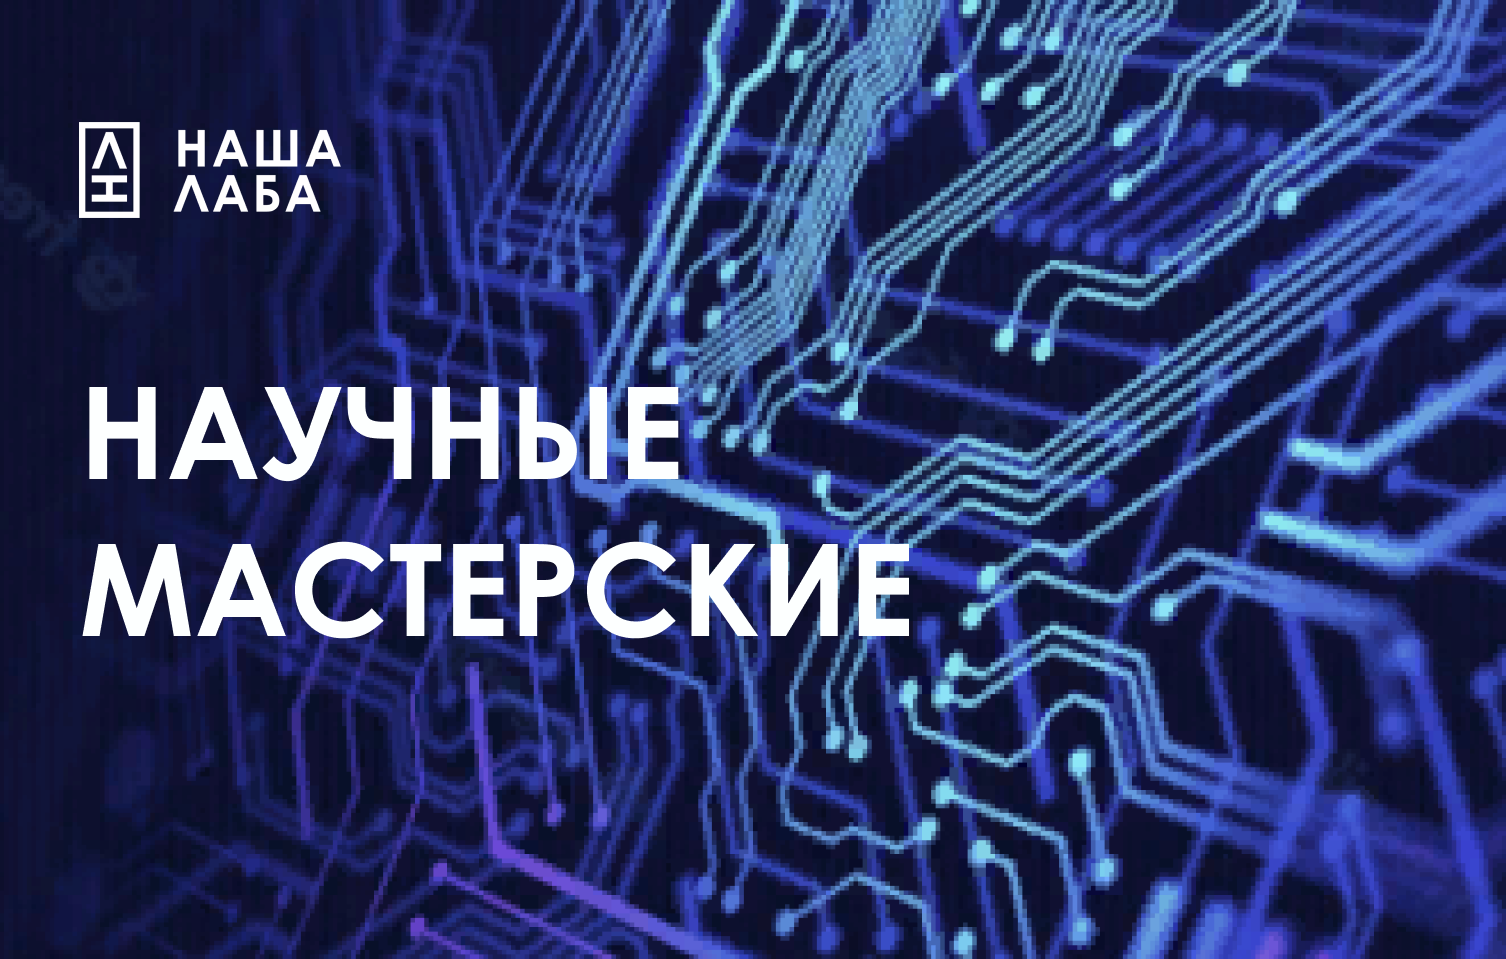 Портал «НАША ЛАБА» продлевает конкурс на включение во всероссийскую карту ремонтных и сервисных организаций – «Научные мастерские»! 